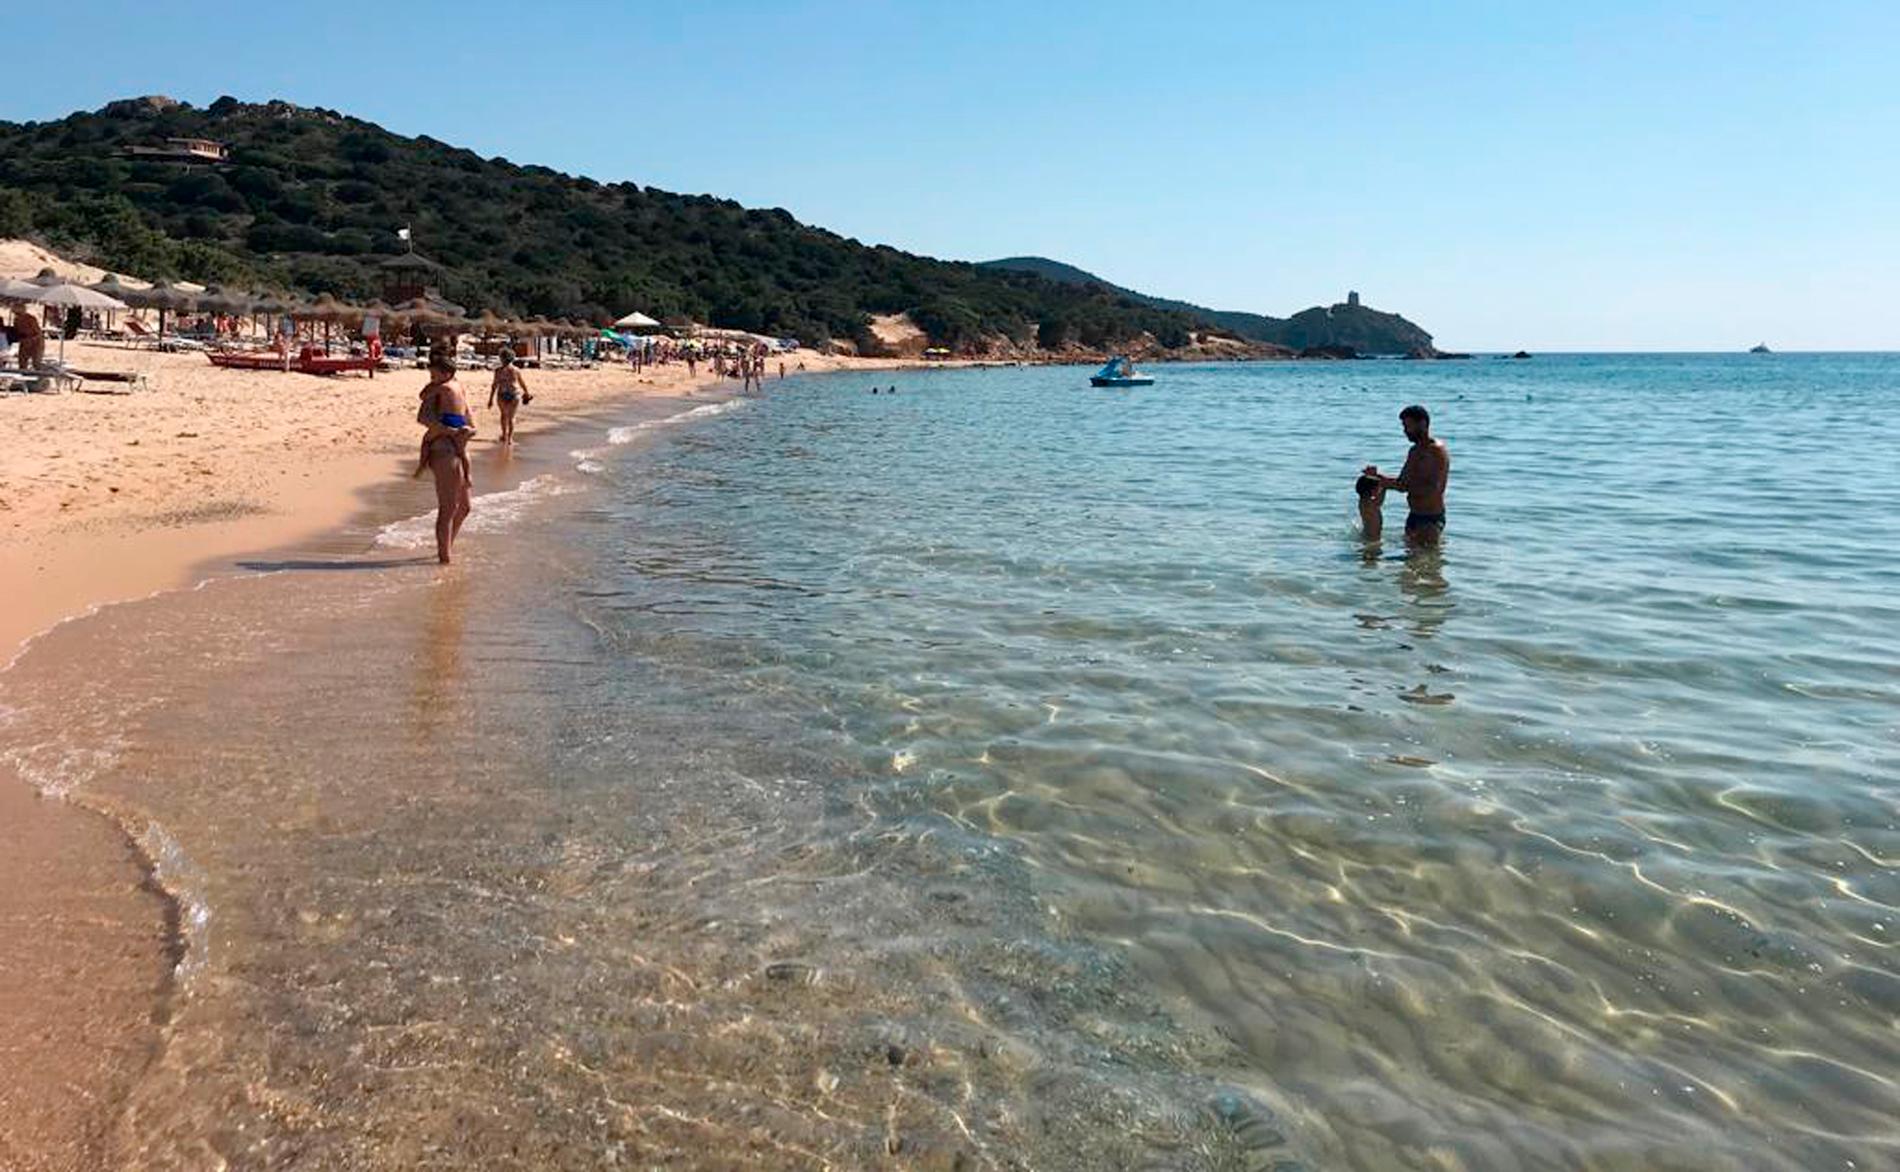 Ön Sardinien är bland annat känt för sitt kristallklara vatten, här sett utanför staden Chia. Arkivbild.